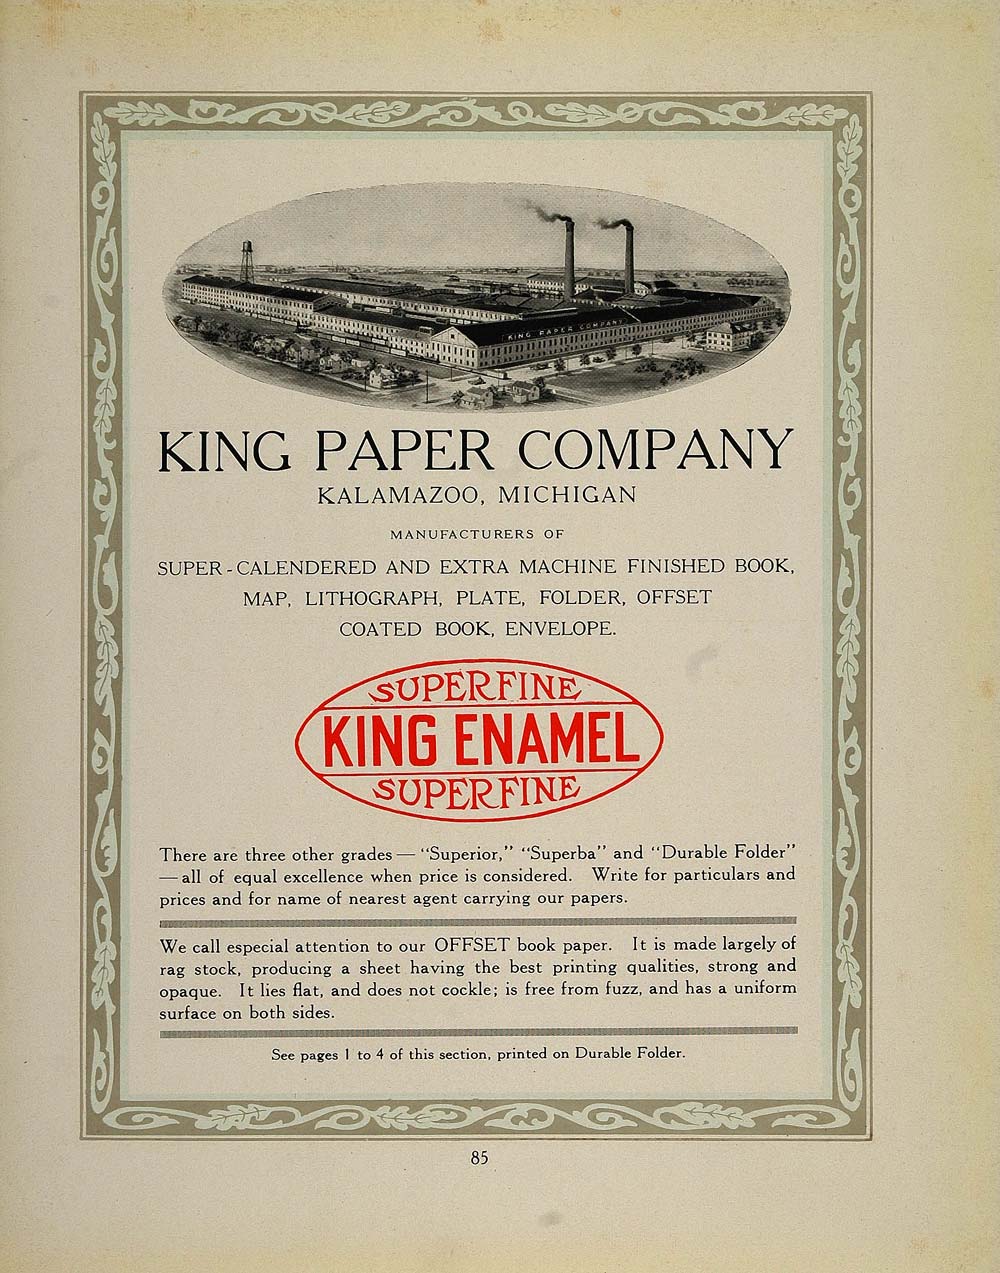 1913 Ad King Paper Company Kalamazoo Printing Factory - ORIGINAL GAC1